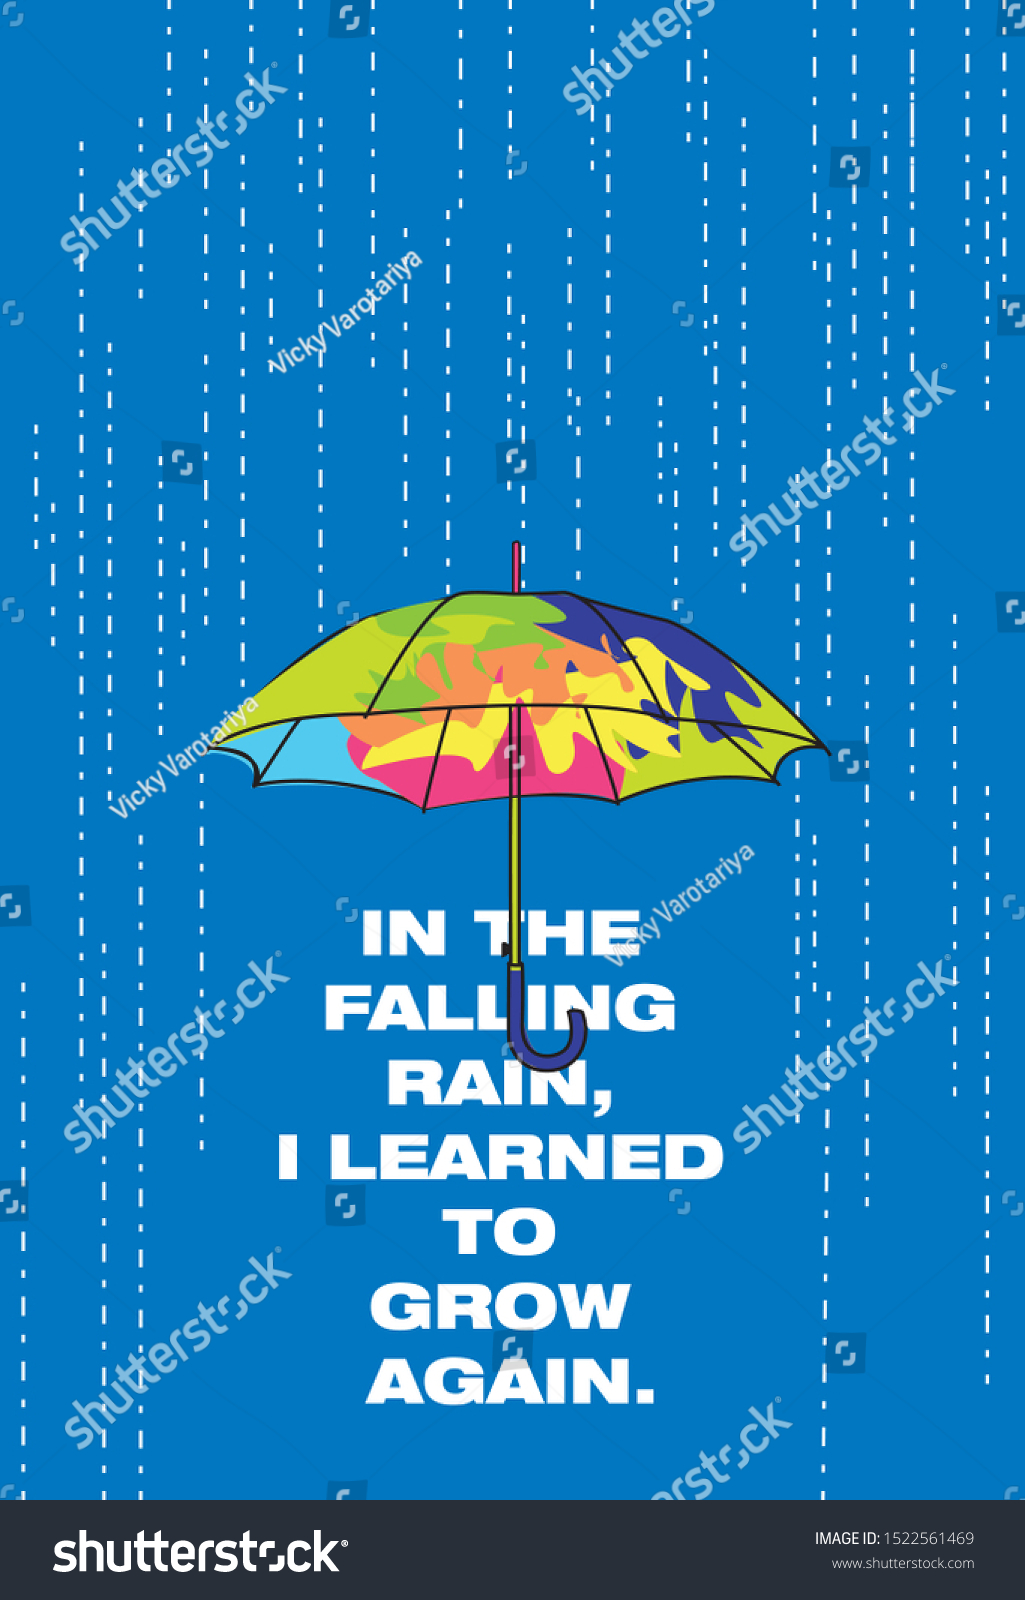 52 Best Umbrella Quotes